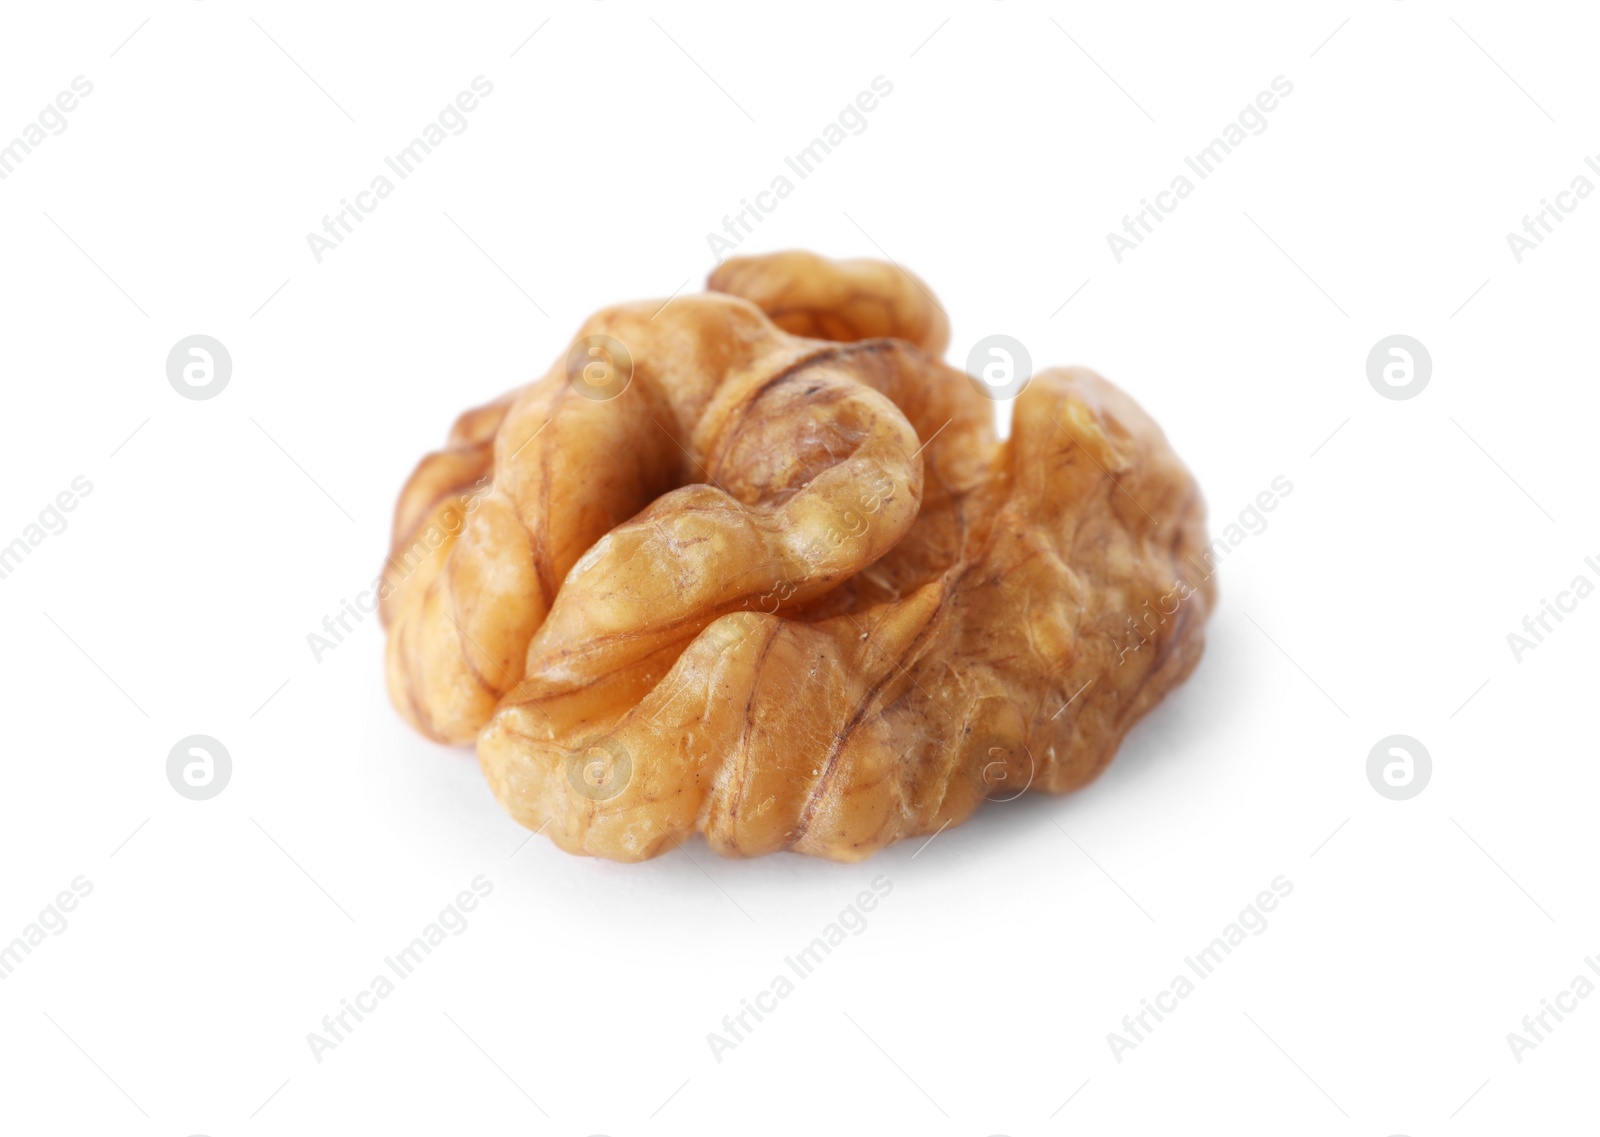 Photo of Half of tasty walnut on white background